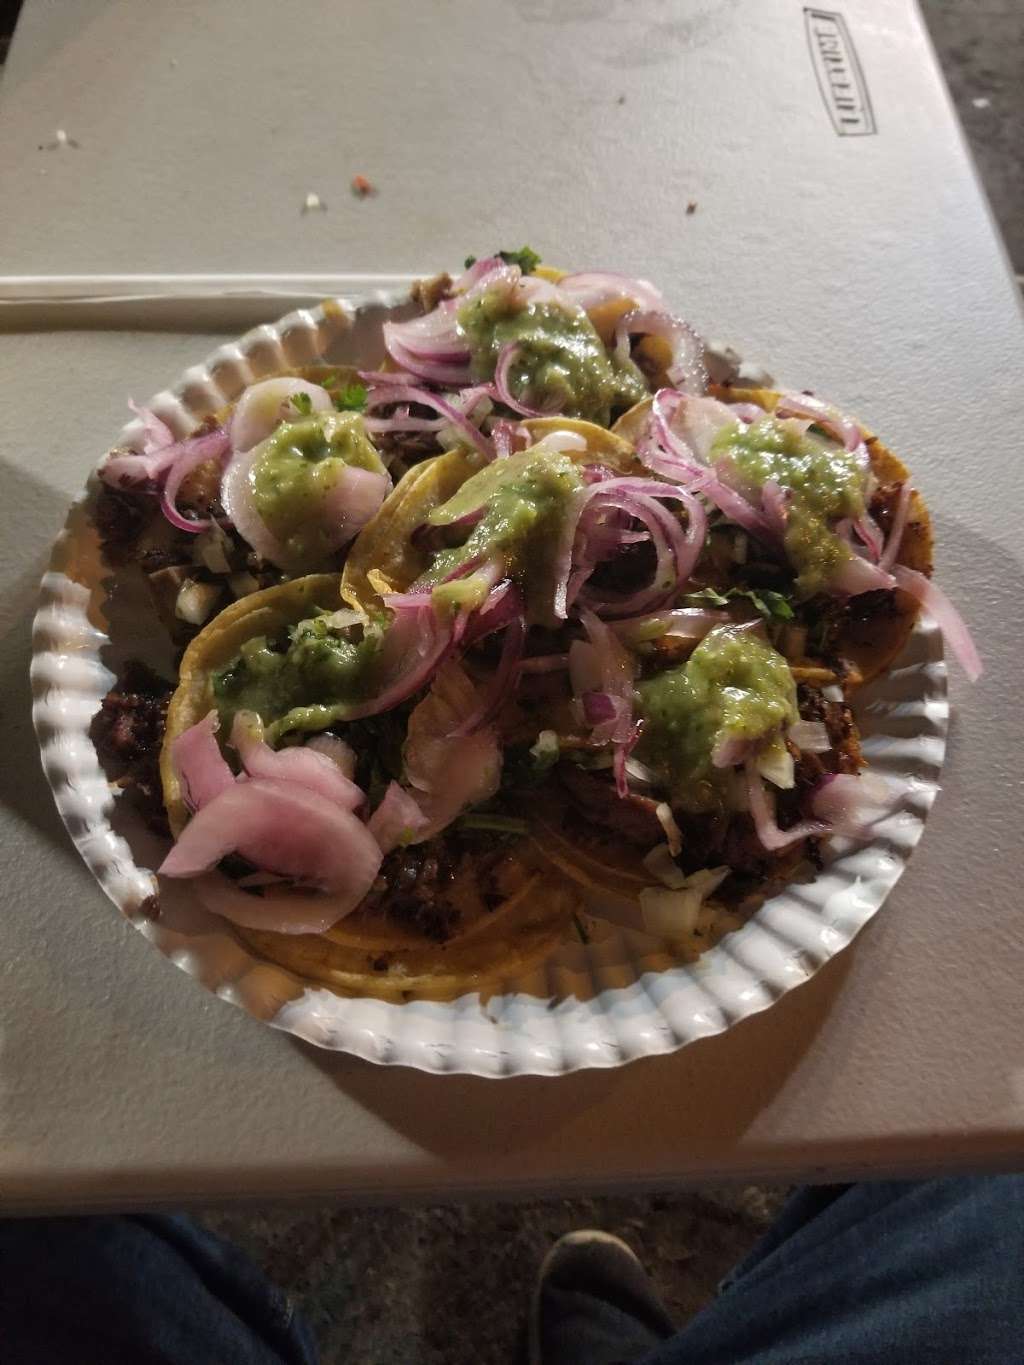 Tacos Indiana | Los Angeles, CA 90023, USA